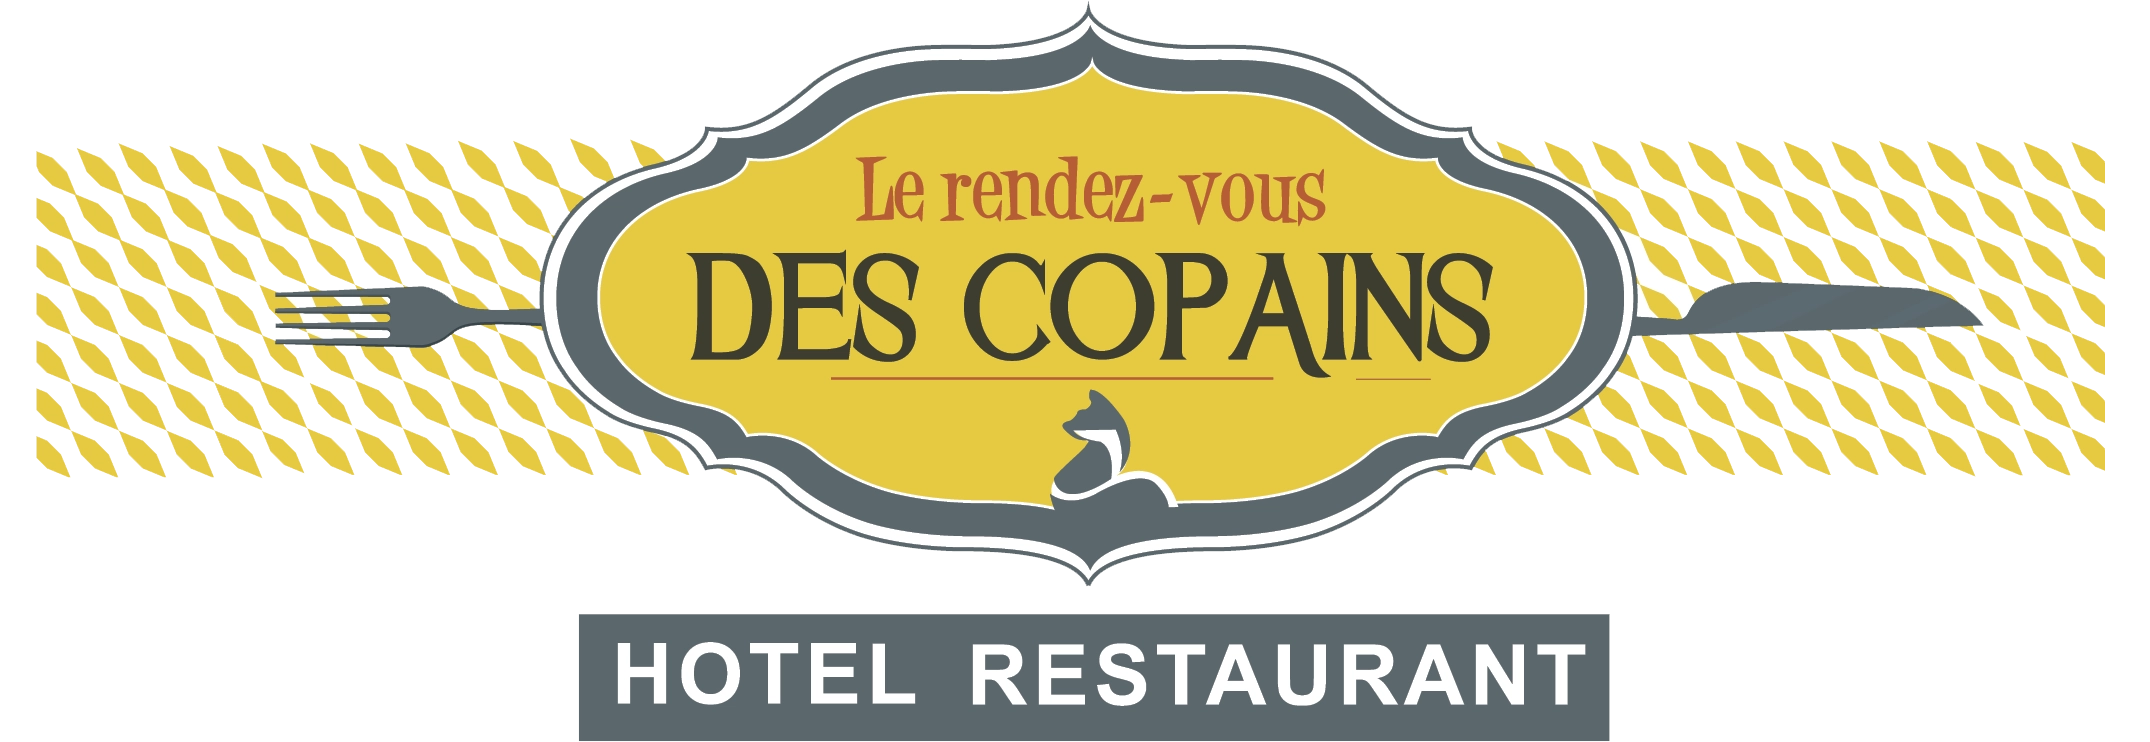 ∞ Hôtel restaurant à Logelheim dans le Haut-Rhin | Hôtel le Rendez-vous des Copains